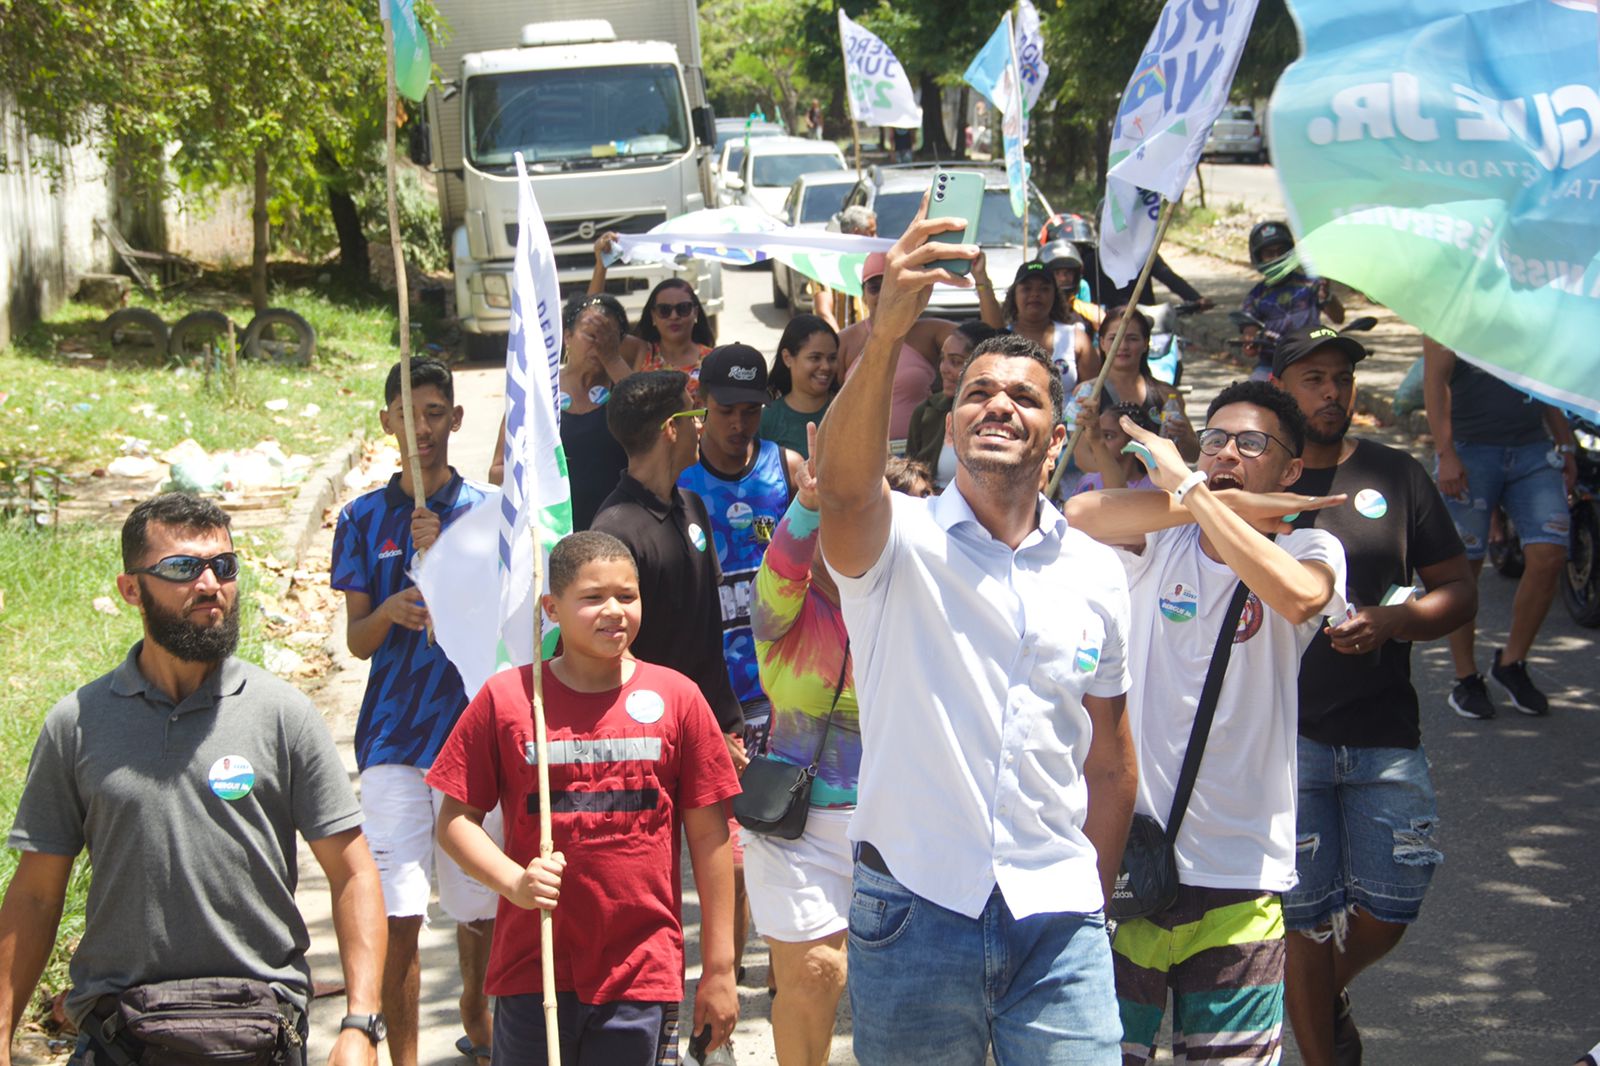 Bergue Junior realiza sua caminhada da vitória e reúne apoiadores na Macaxeira